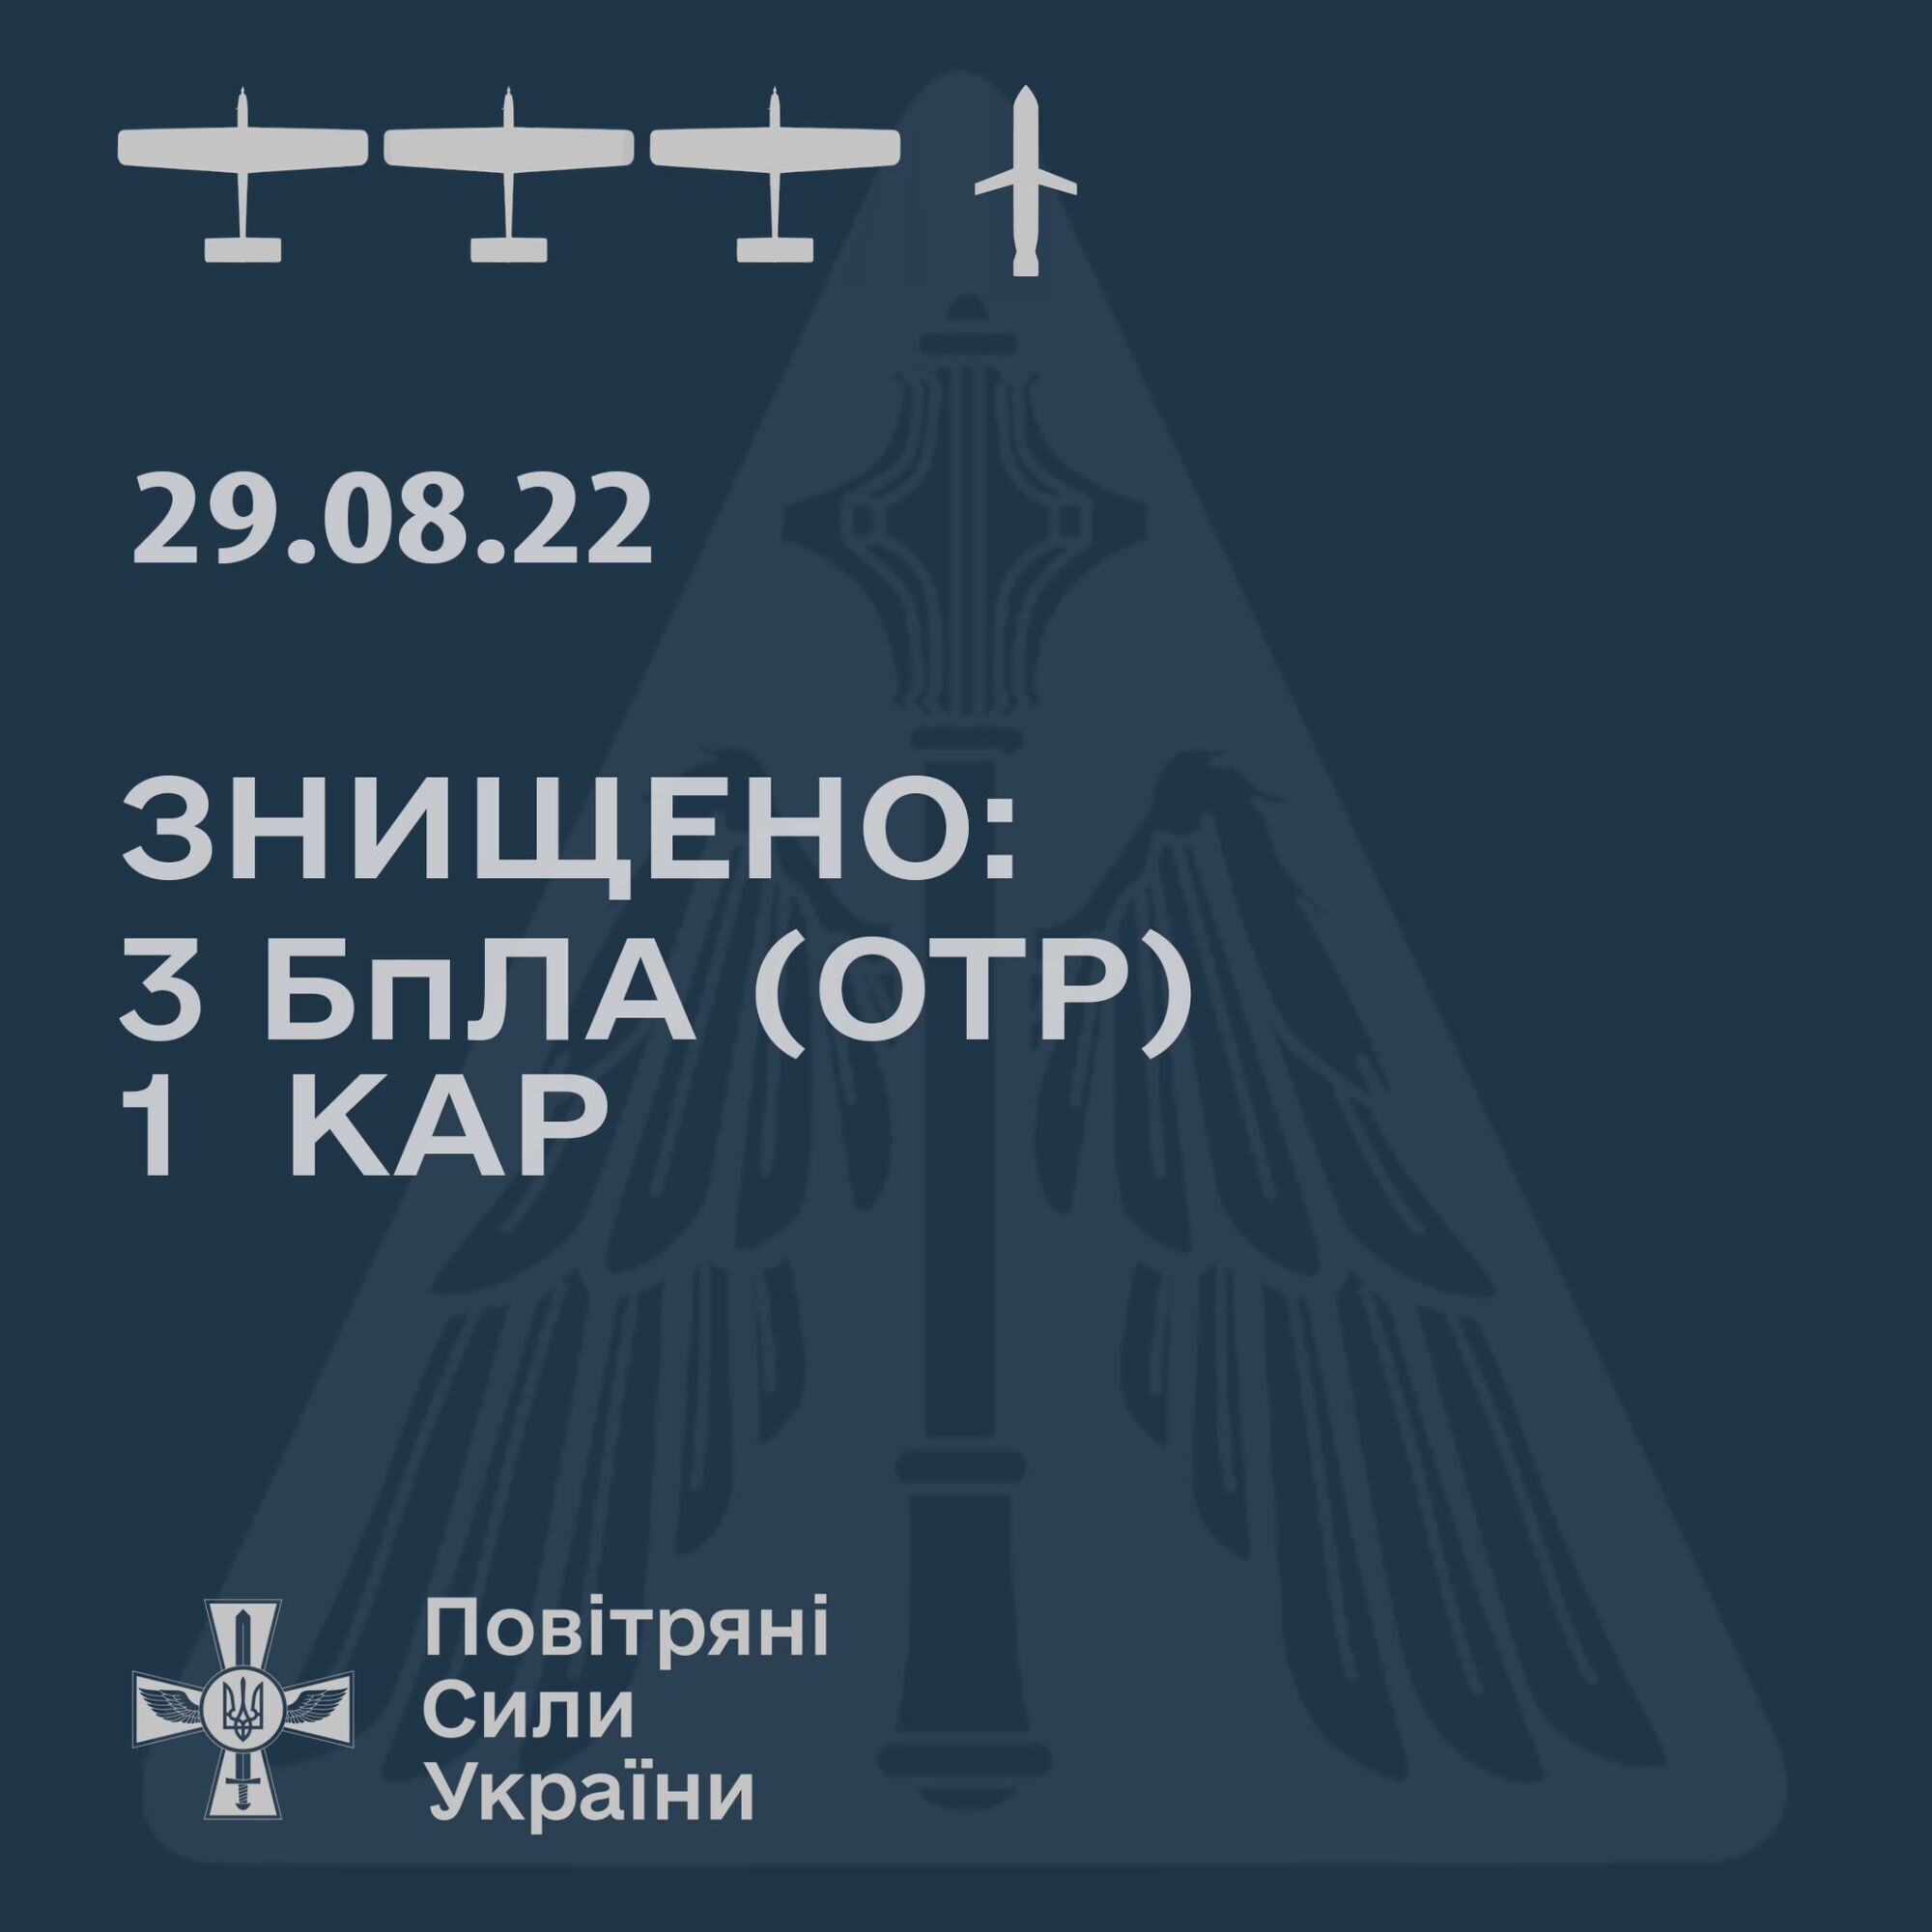 Работа Воздушных сил ВСУ в сутки 29 августа